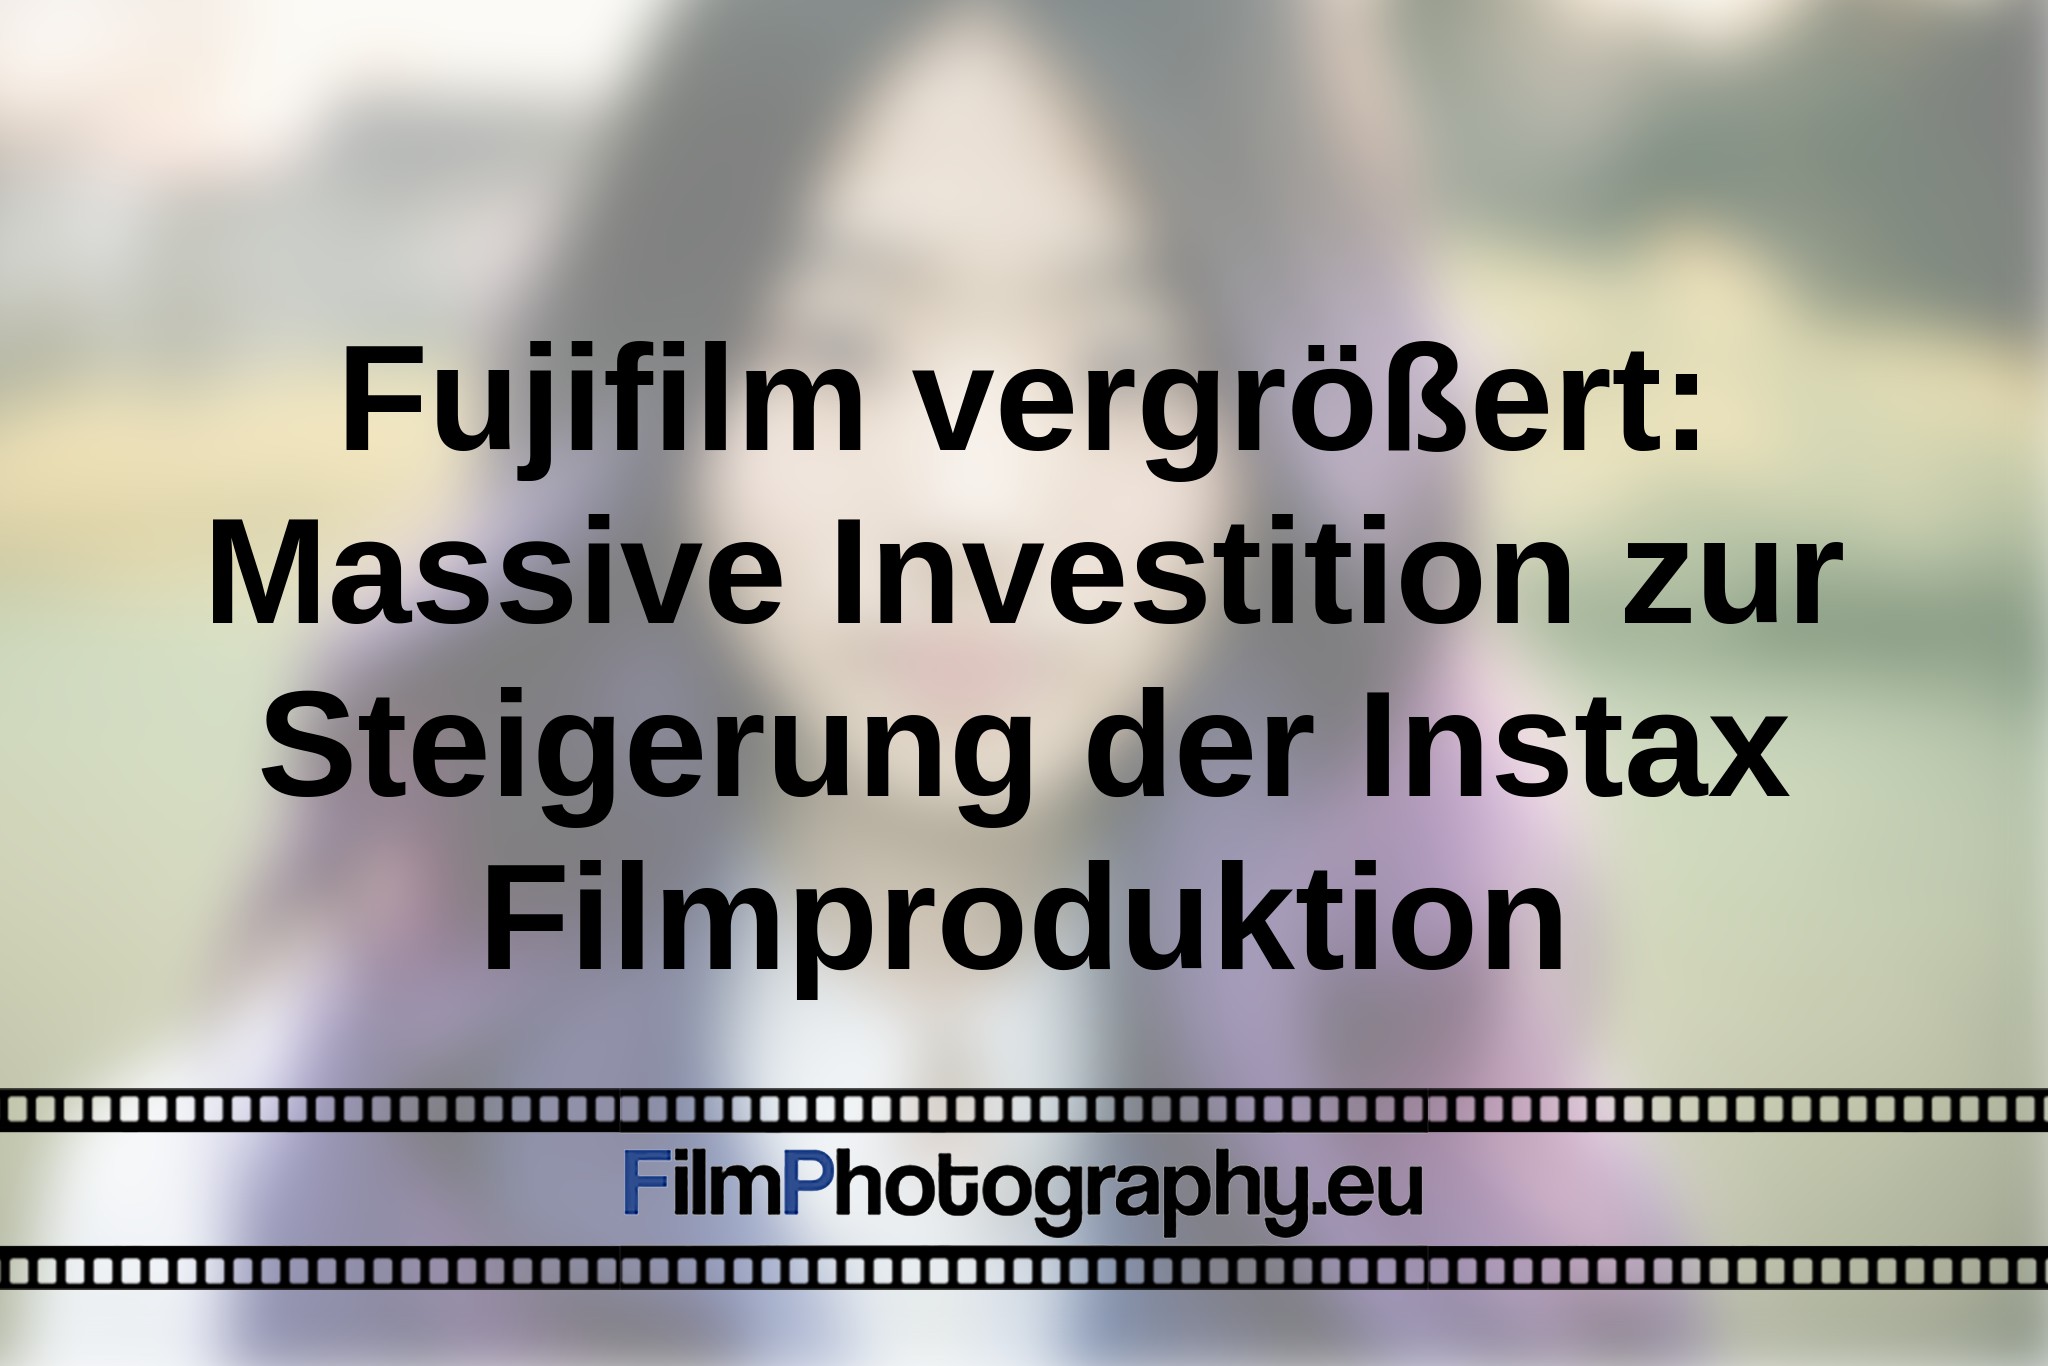 fujifilm-vergroeßert-massive-investition-zur-steigerung-der-instax-filmproduktion-bnv.jpg